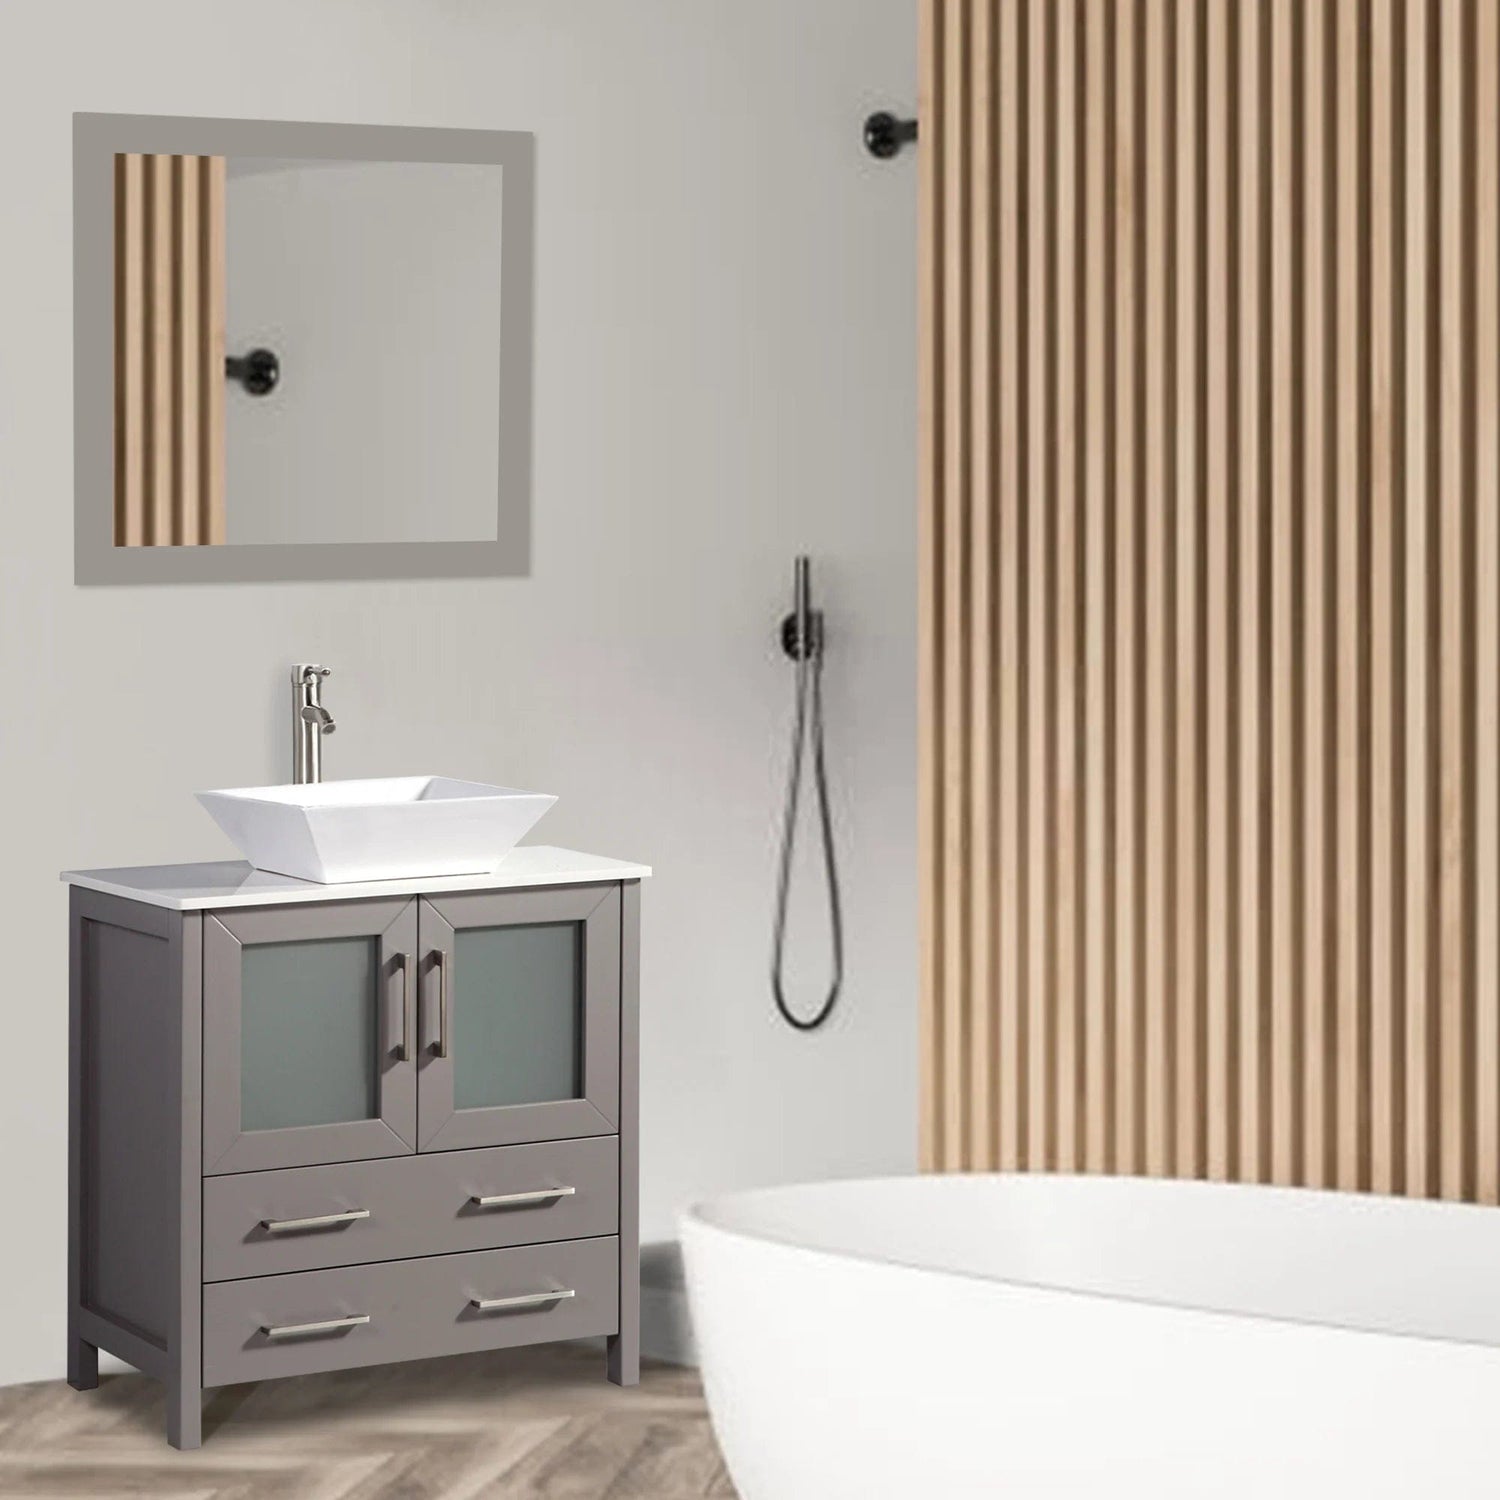 30 in. Single Sink Small Bathroom Vanity Set in Gray - Decohub Home